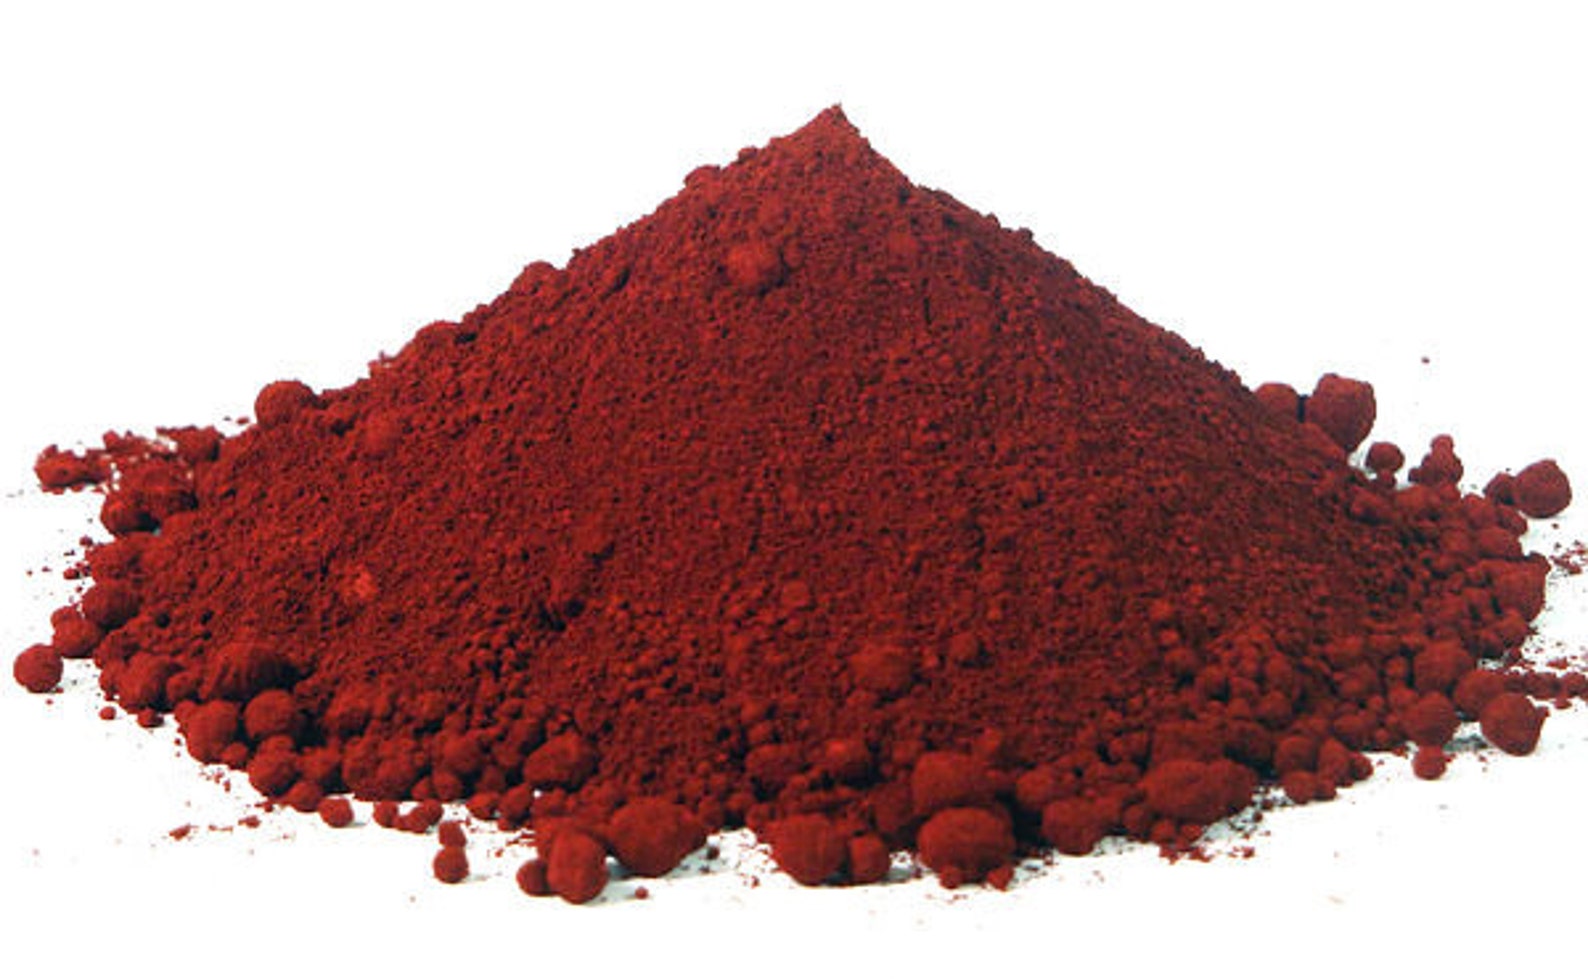 Пигмент Red Oxide. 77491 -Красный оксид железа пигмент. Smt18 Oxide Red. Оксид железа золото